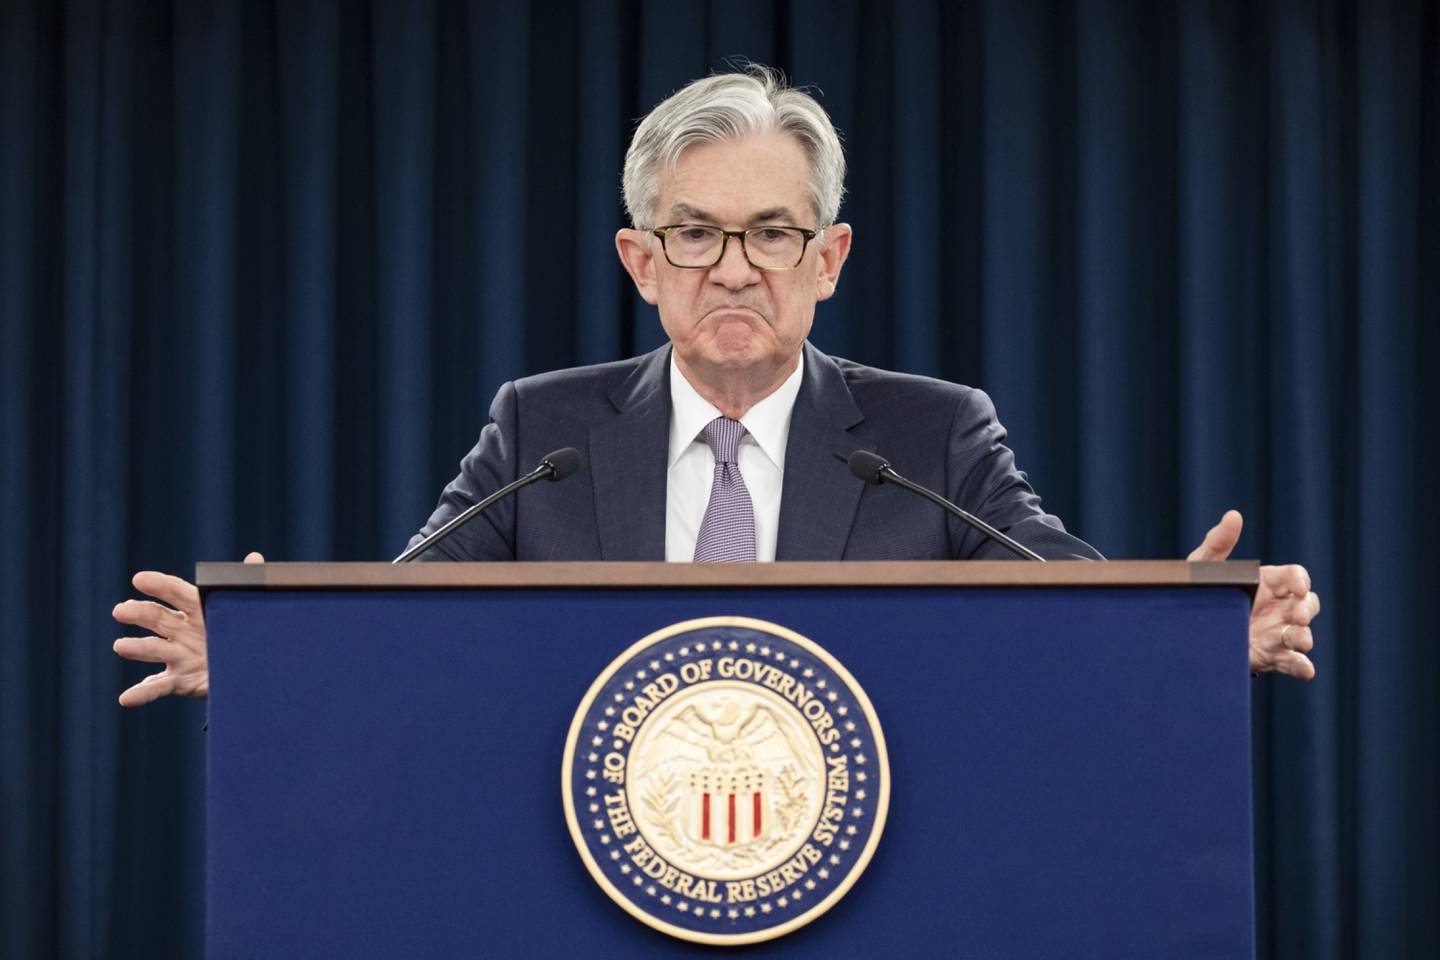 El presidente de la Reserva Federal, Jerome Powell, durante una conferencia de prensa después de una reunión del Comité Federal de Mercado Abierto el 29 de enero de 2020 en Washington, DC.